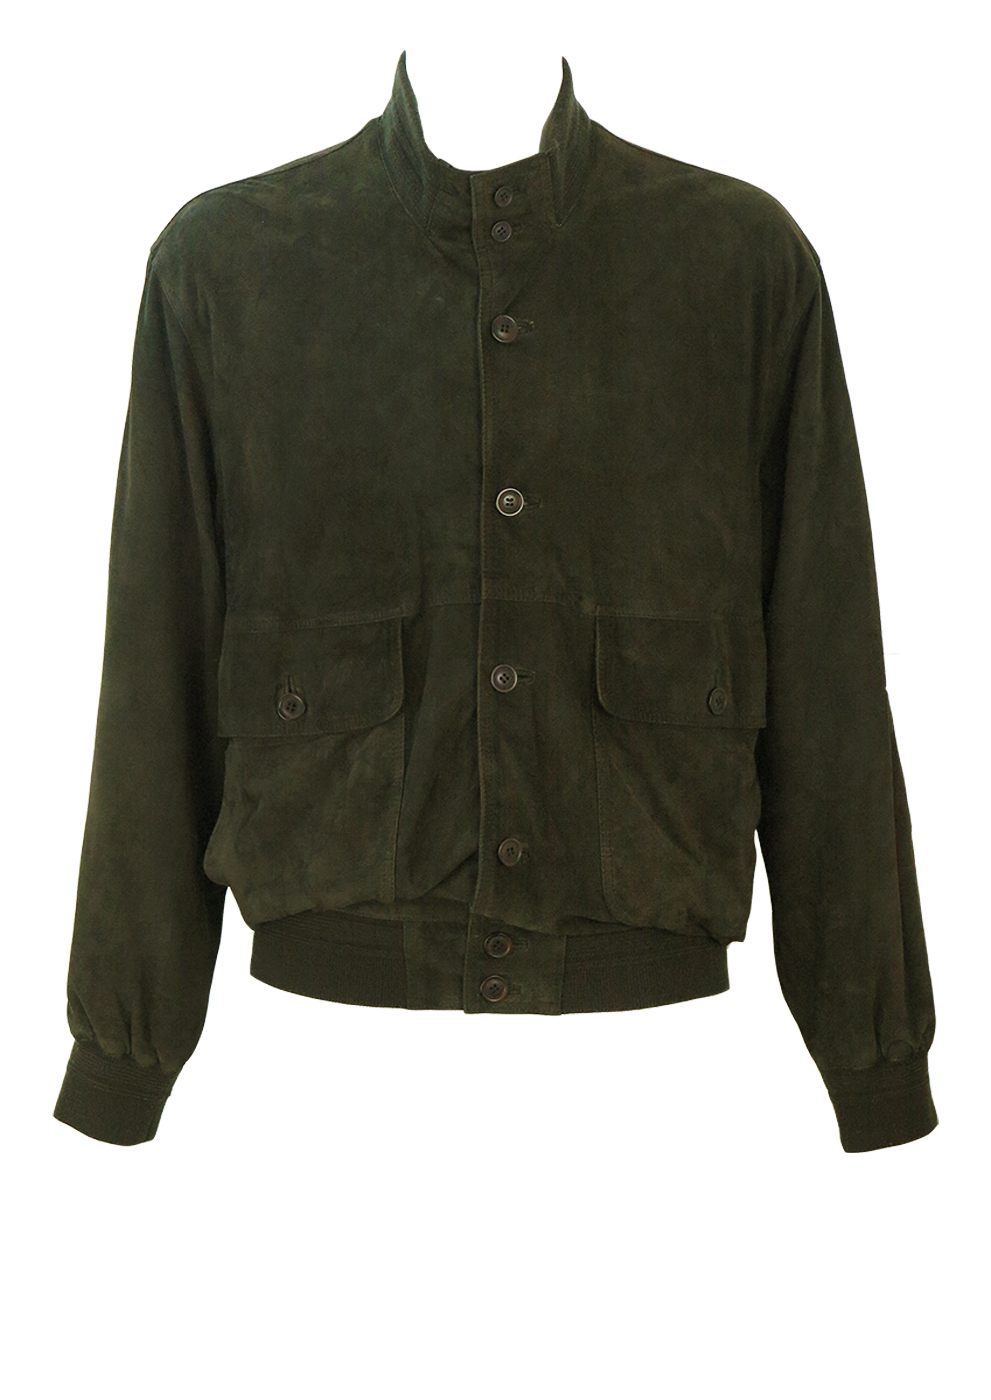 Olive Green Soft Suede Buttoned Bomber Jacket - L | Reign Vintage